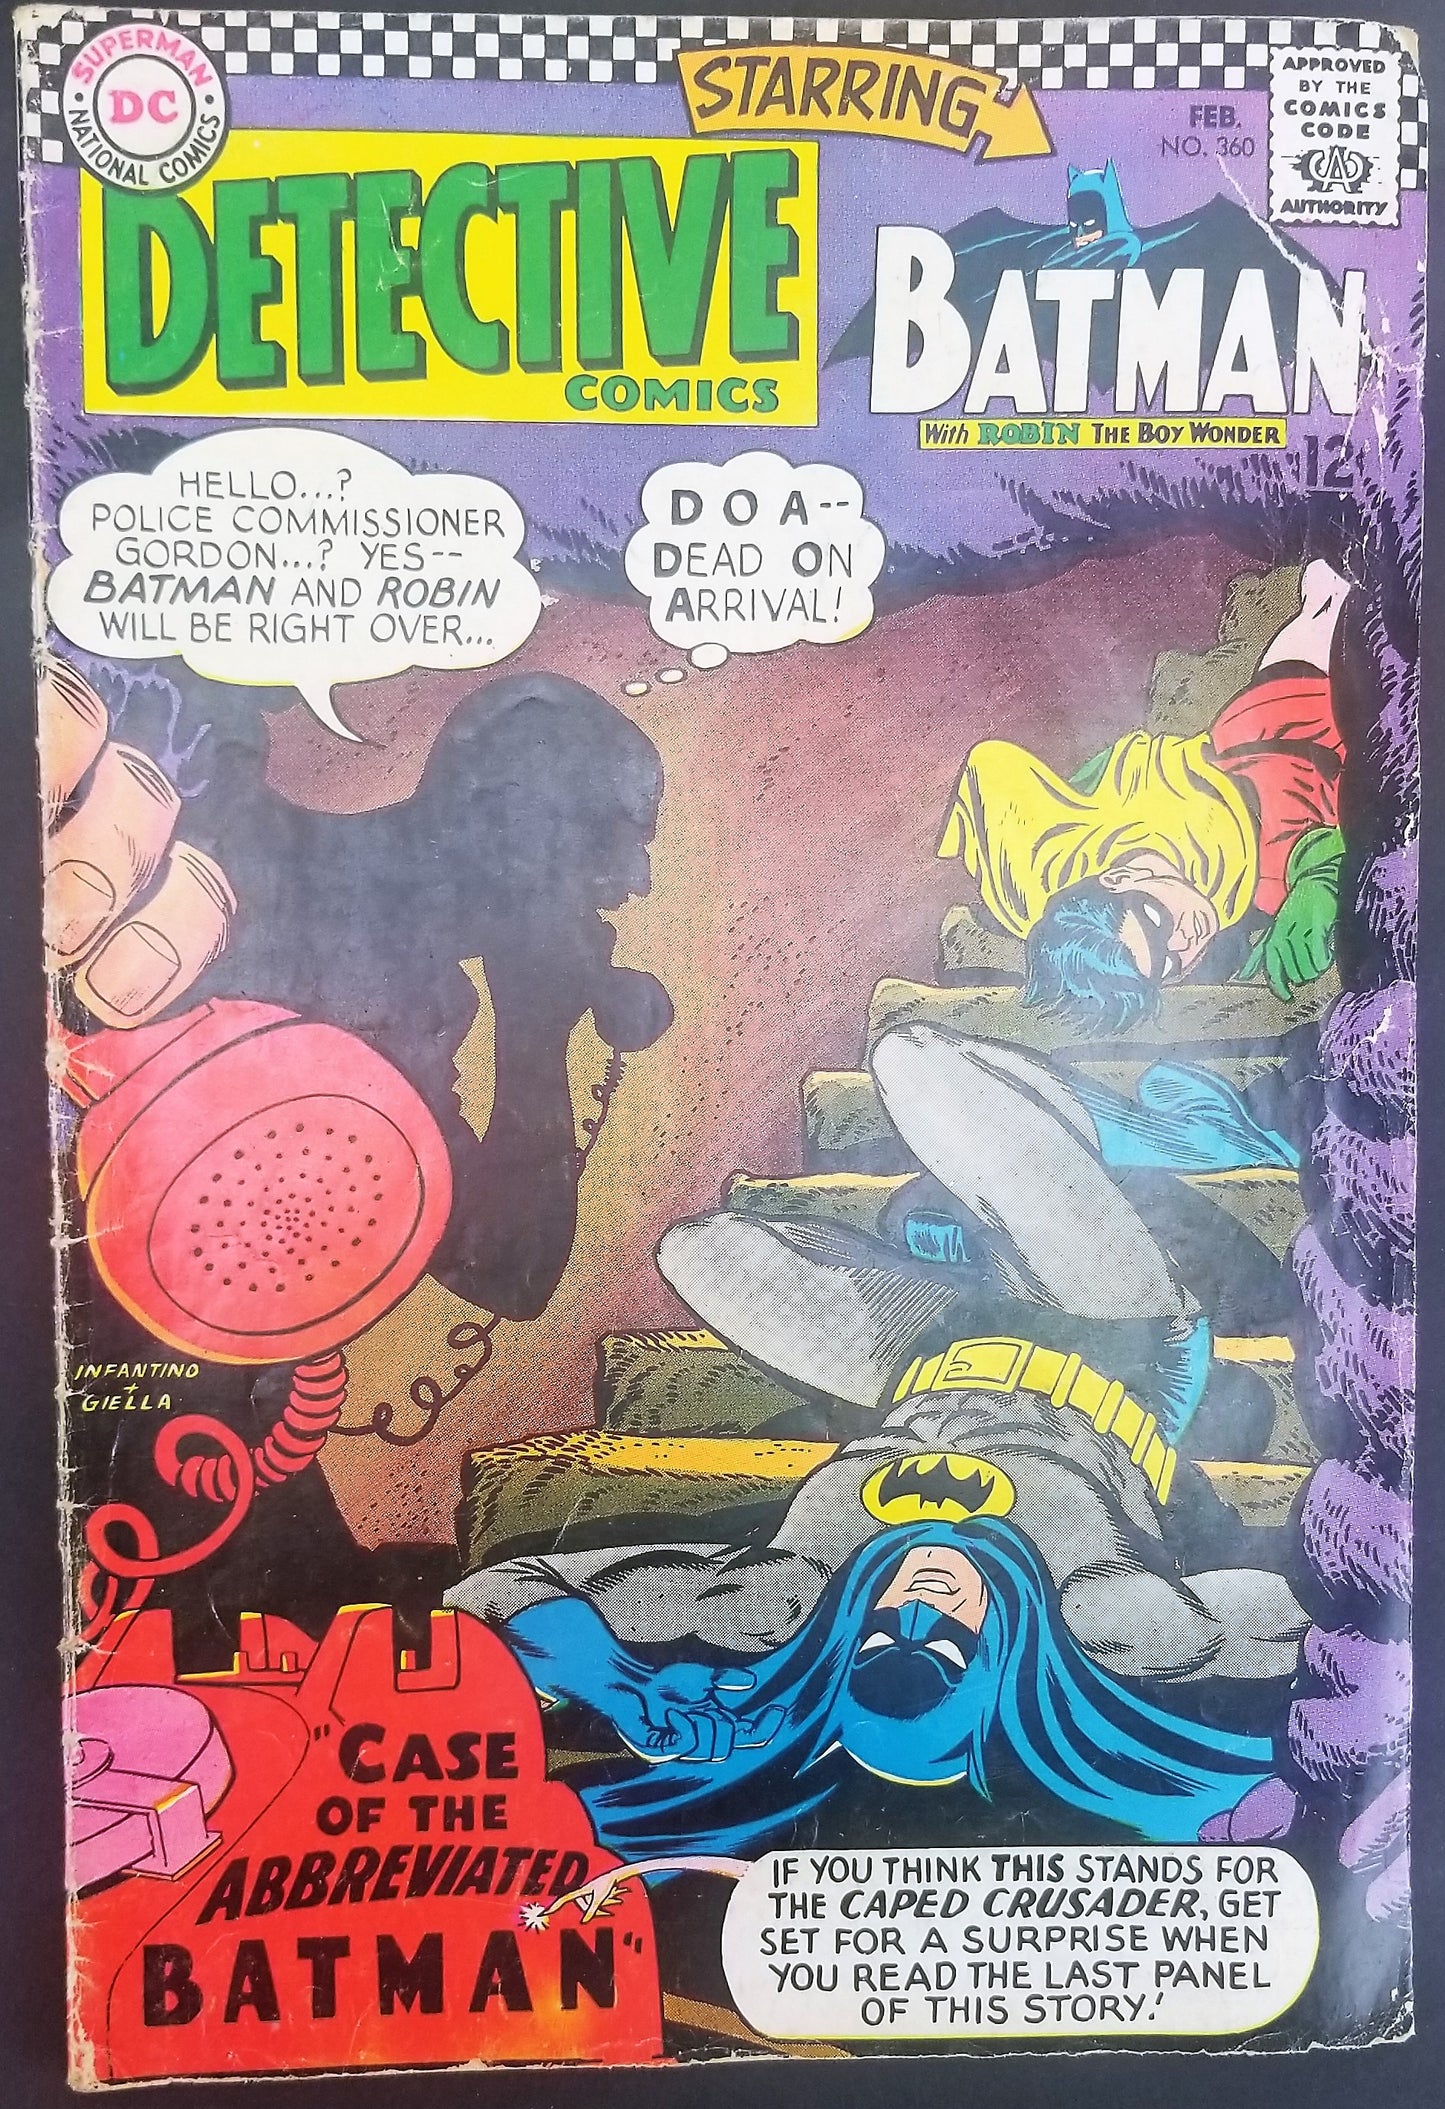 Detective Comics No. 360, Starring Batman, DC Comics, February 1967